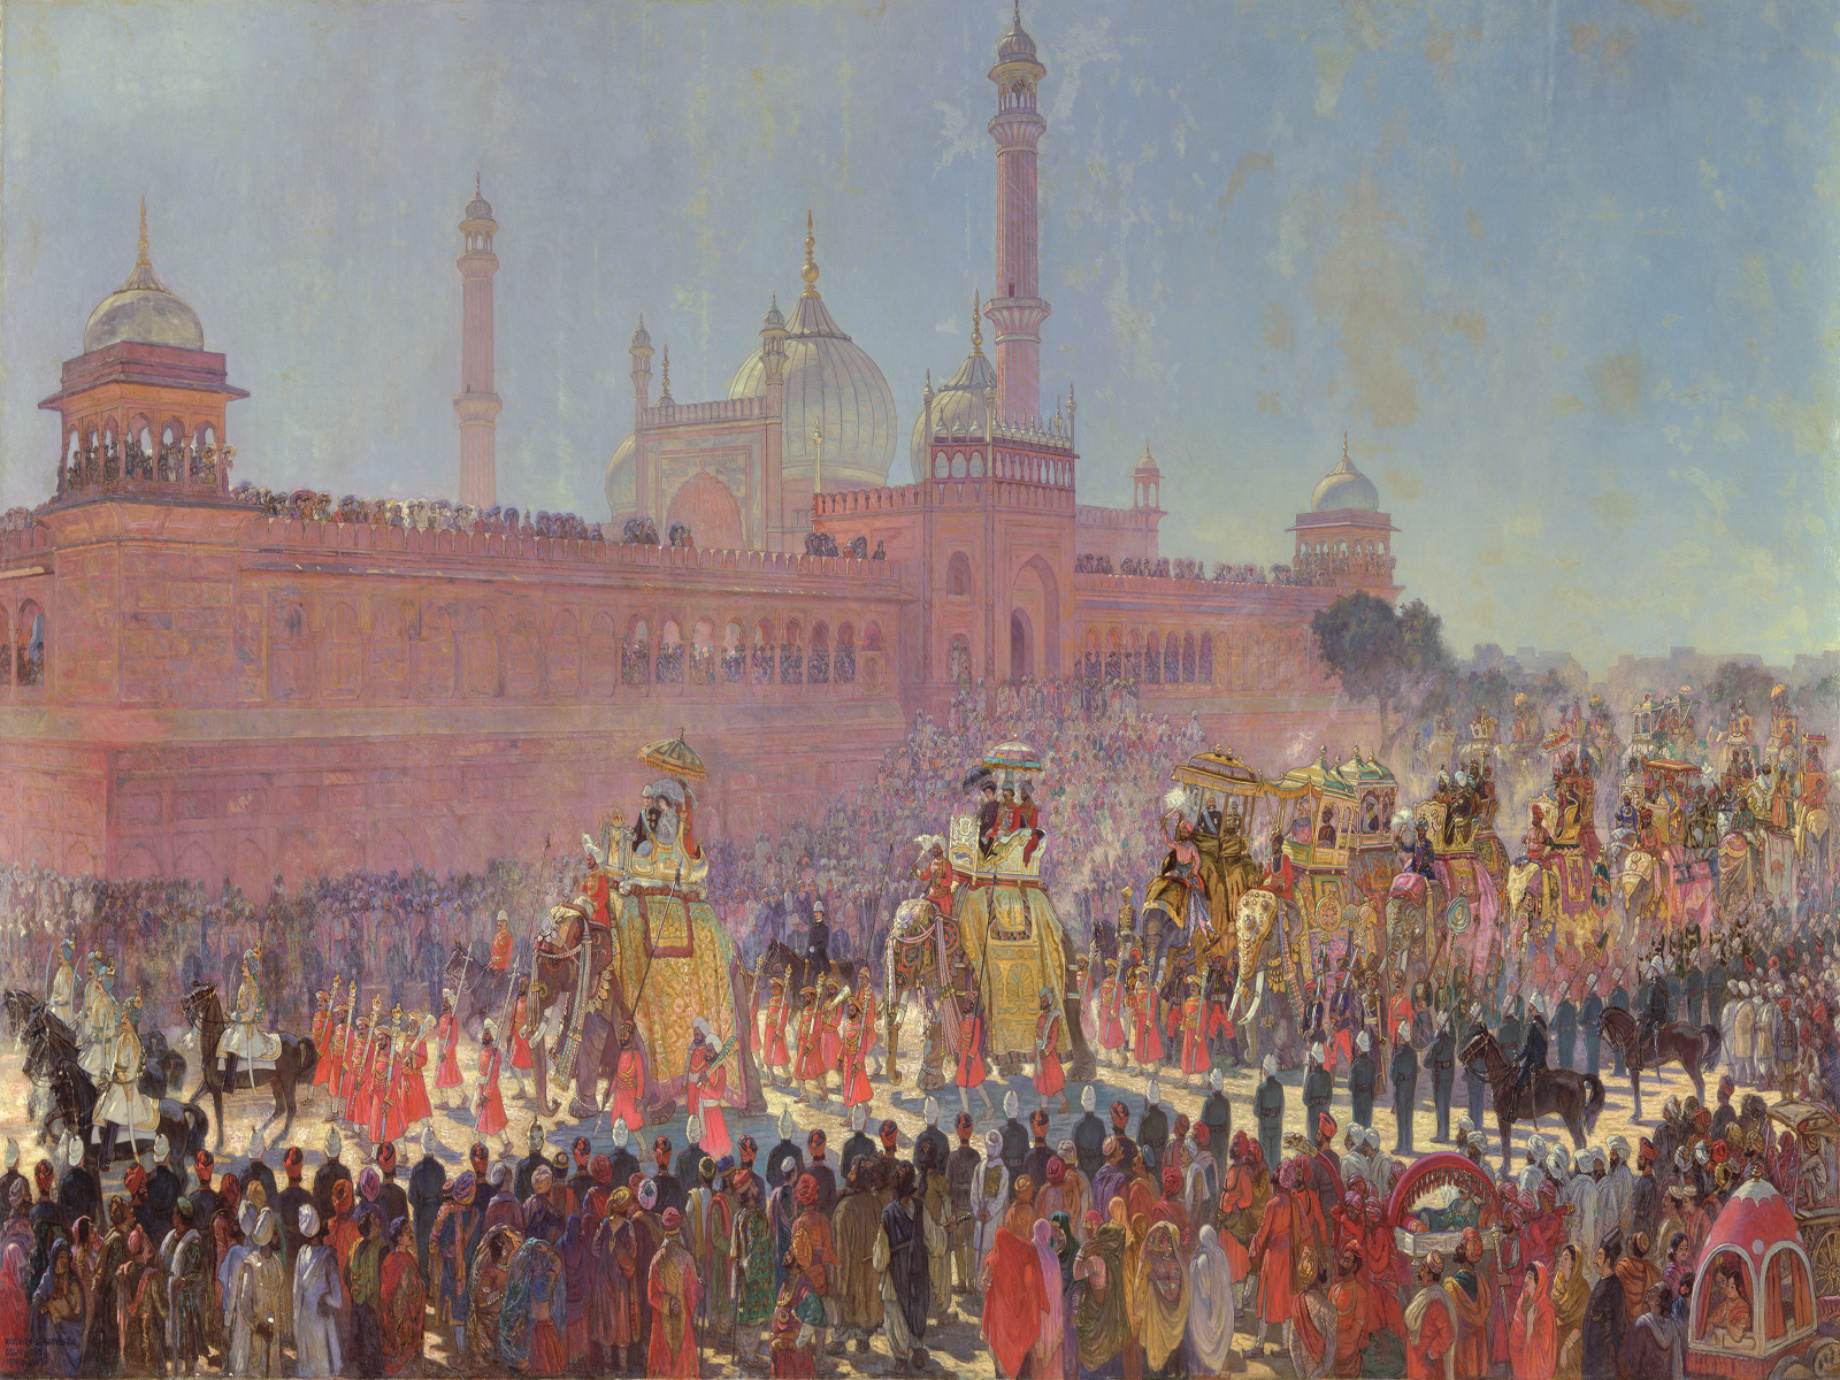 Delhi Durbar parade i 1903.